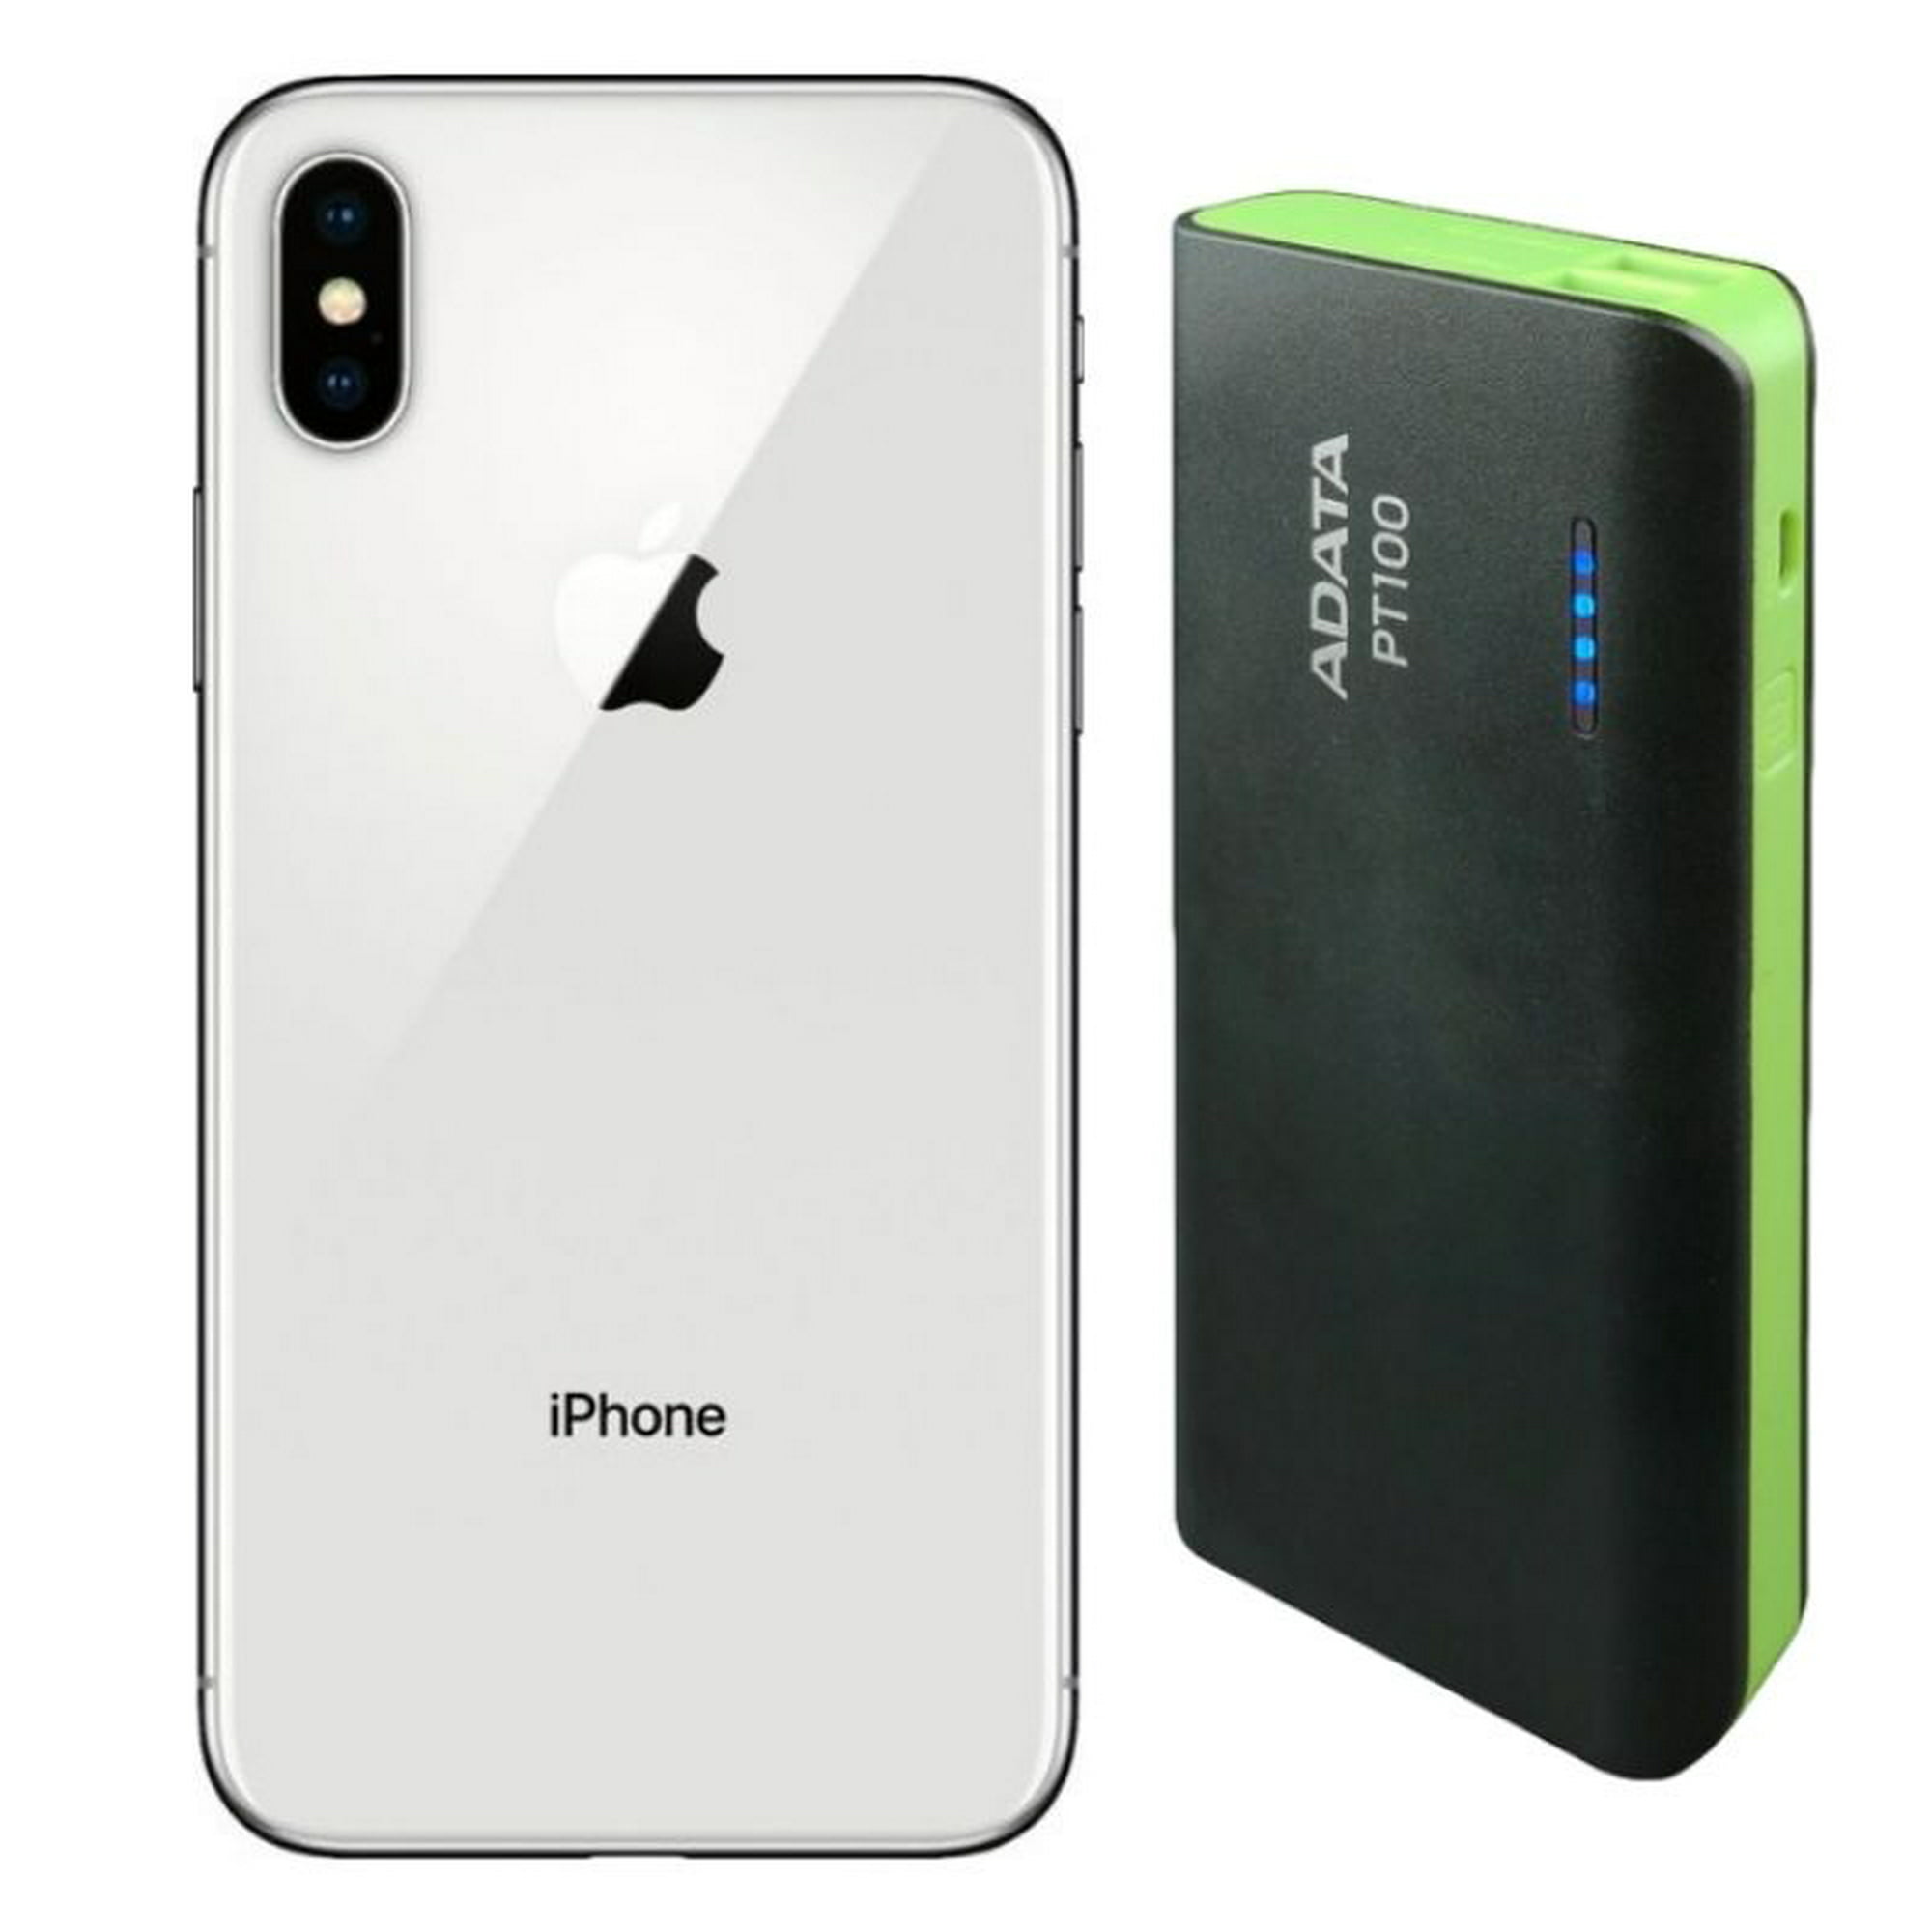 iPhone X 64GB Reacondicionado Plata + Audífonos Genéricos Apple Galaxy iPhone  X